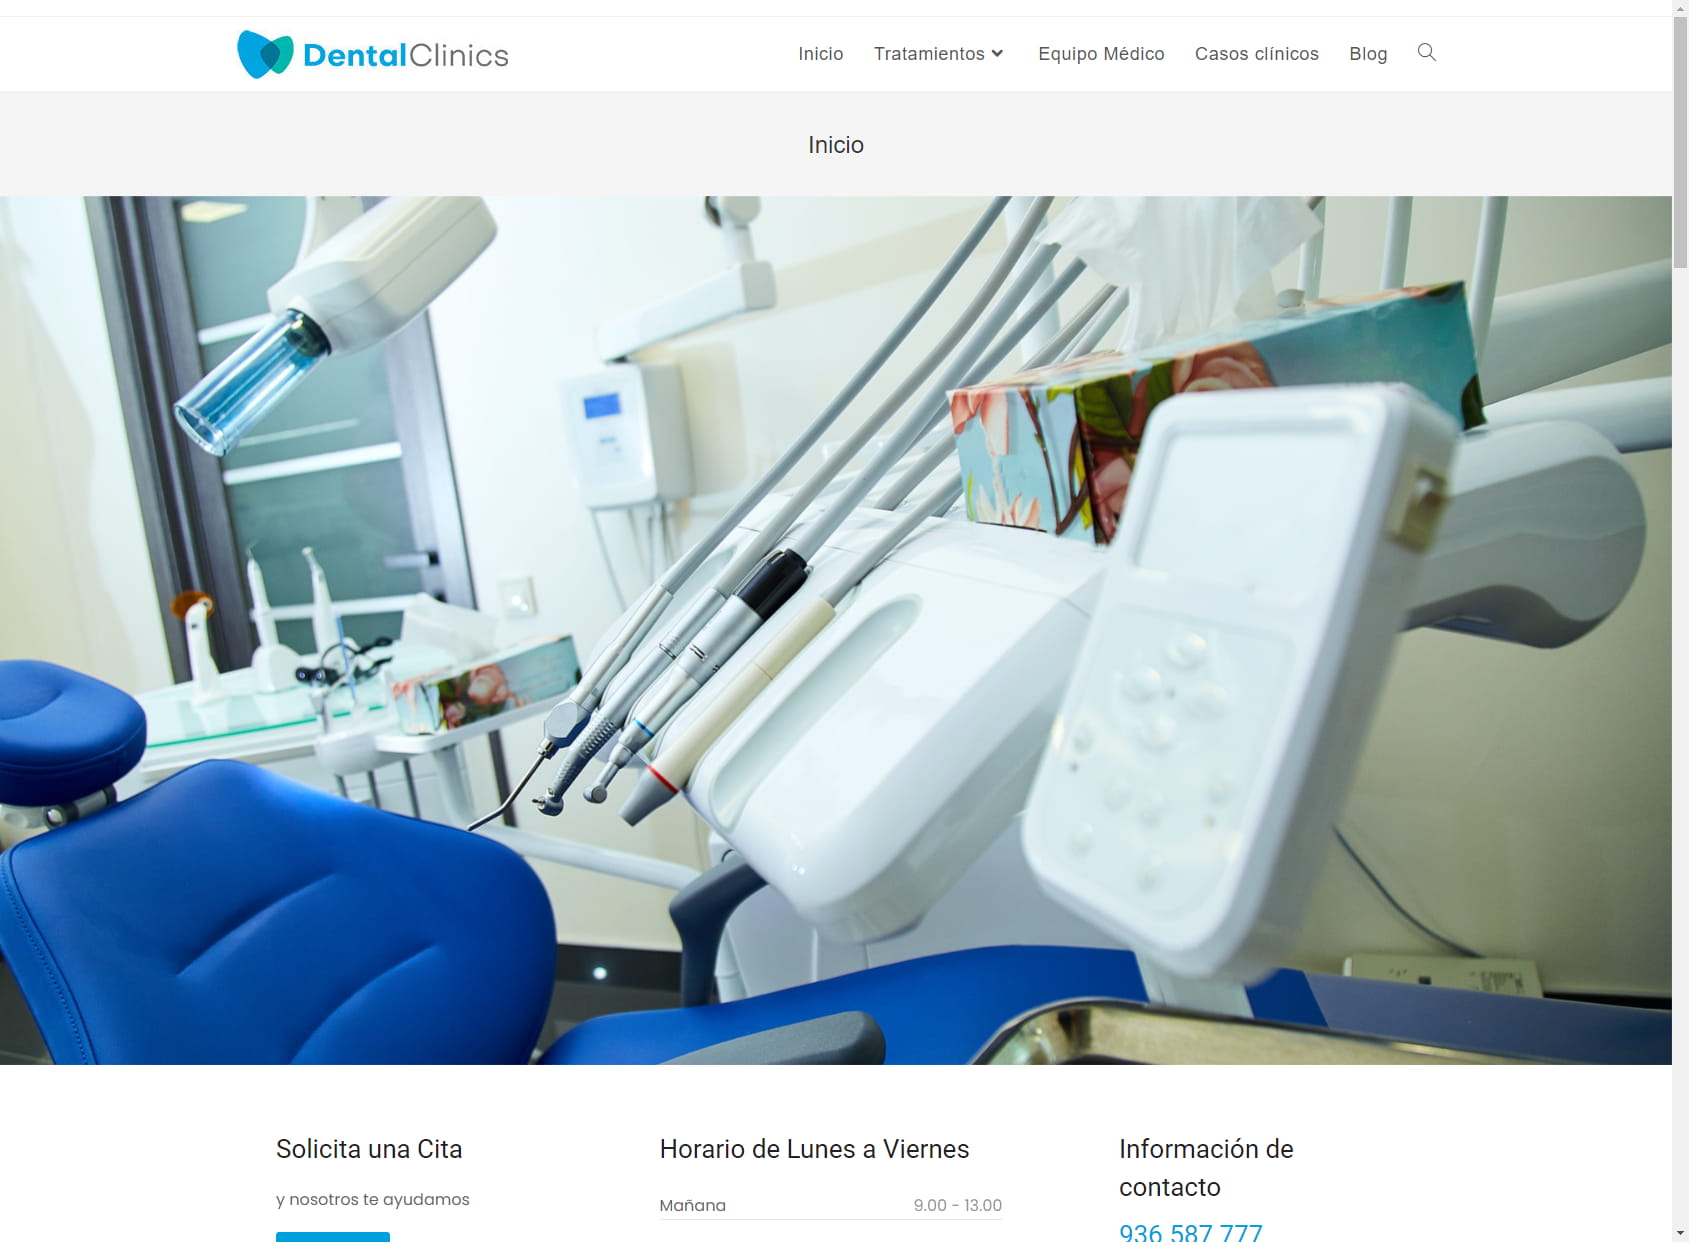 Dental Clinics Viladecans